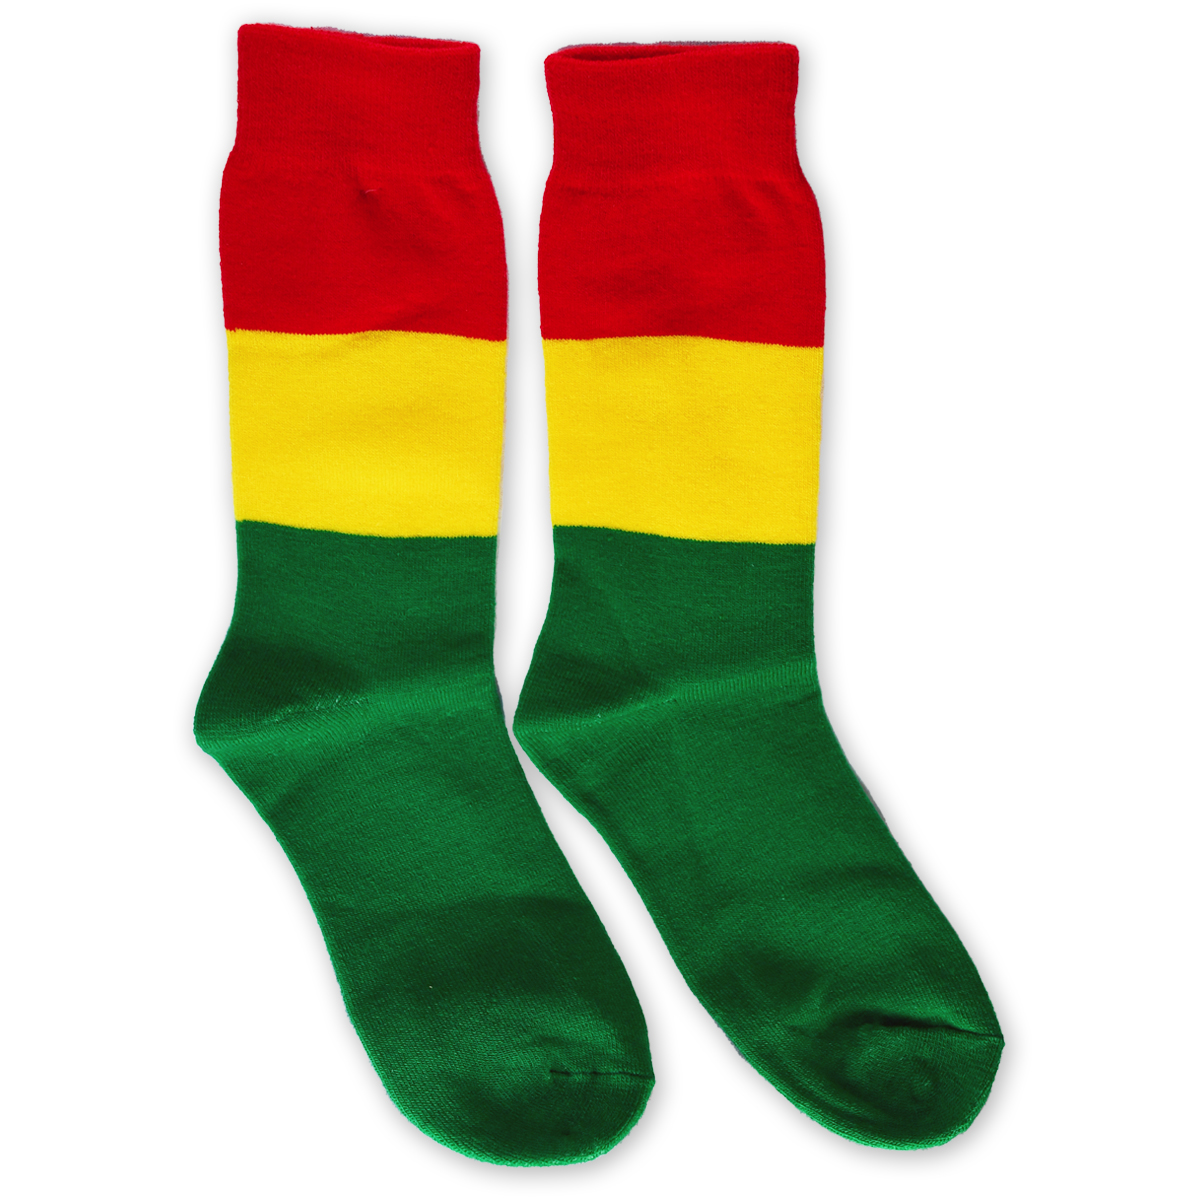 Rasta Stripe Tall Socks